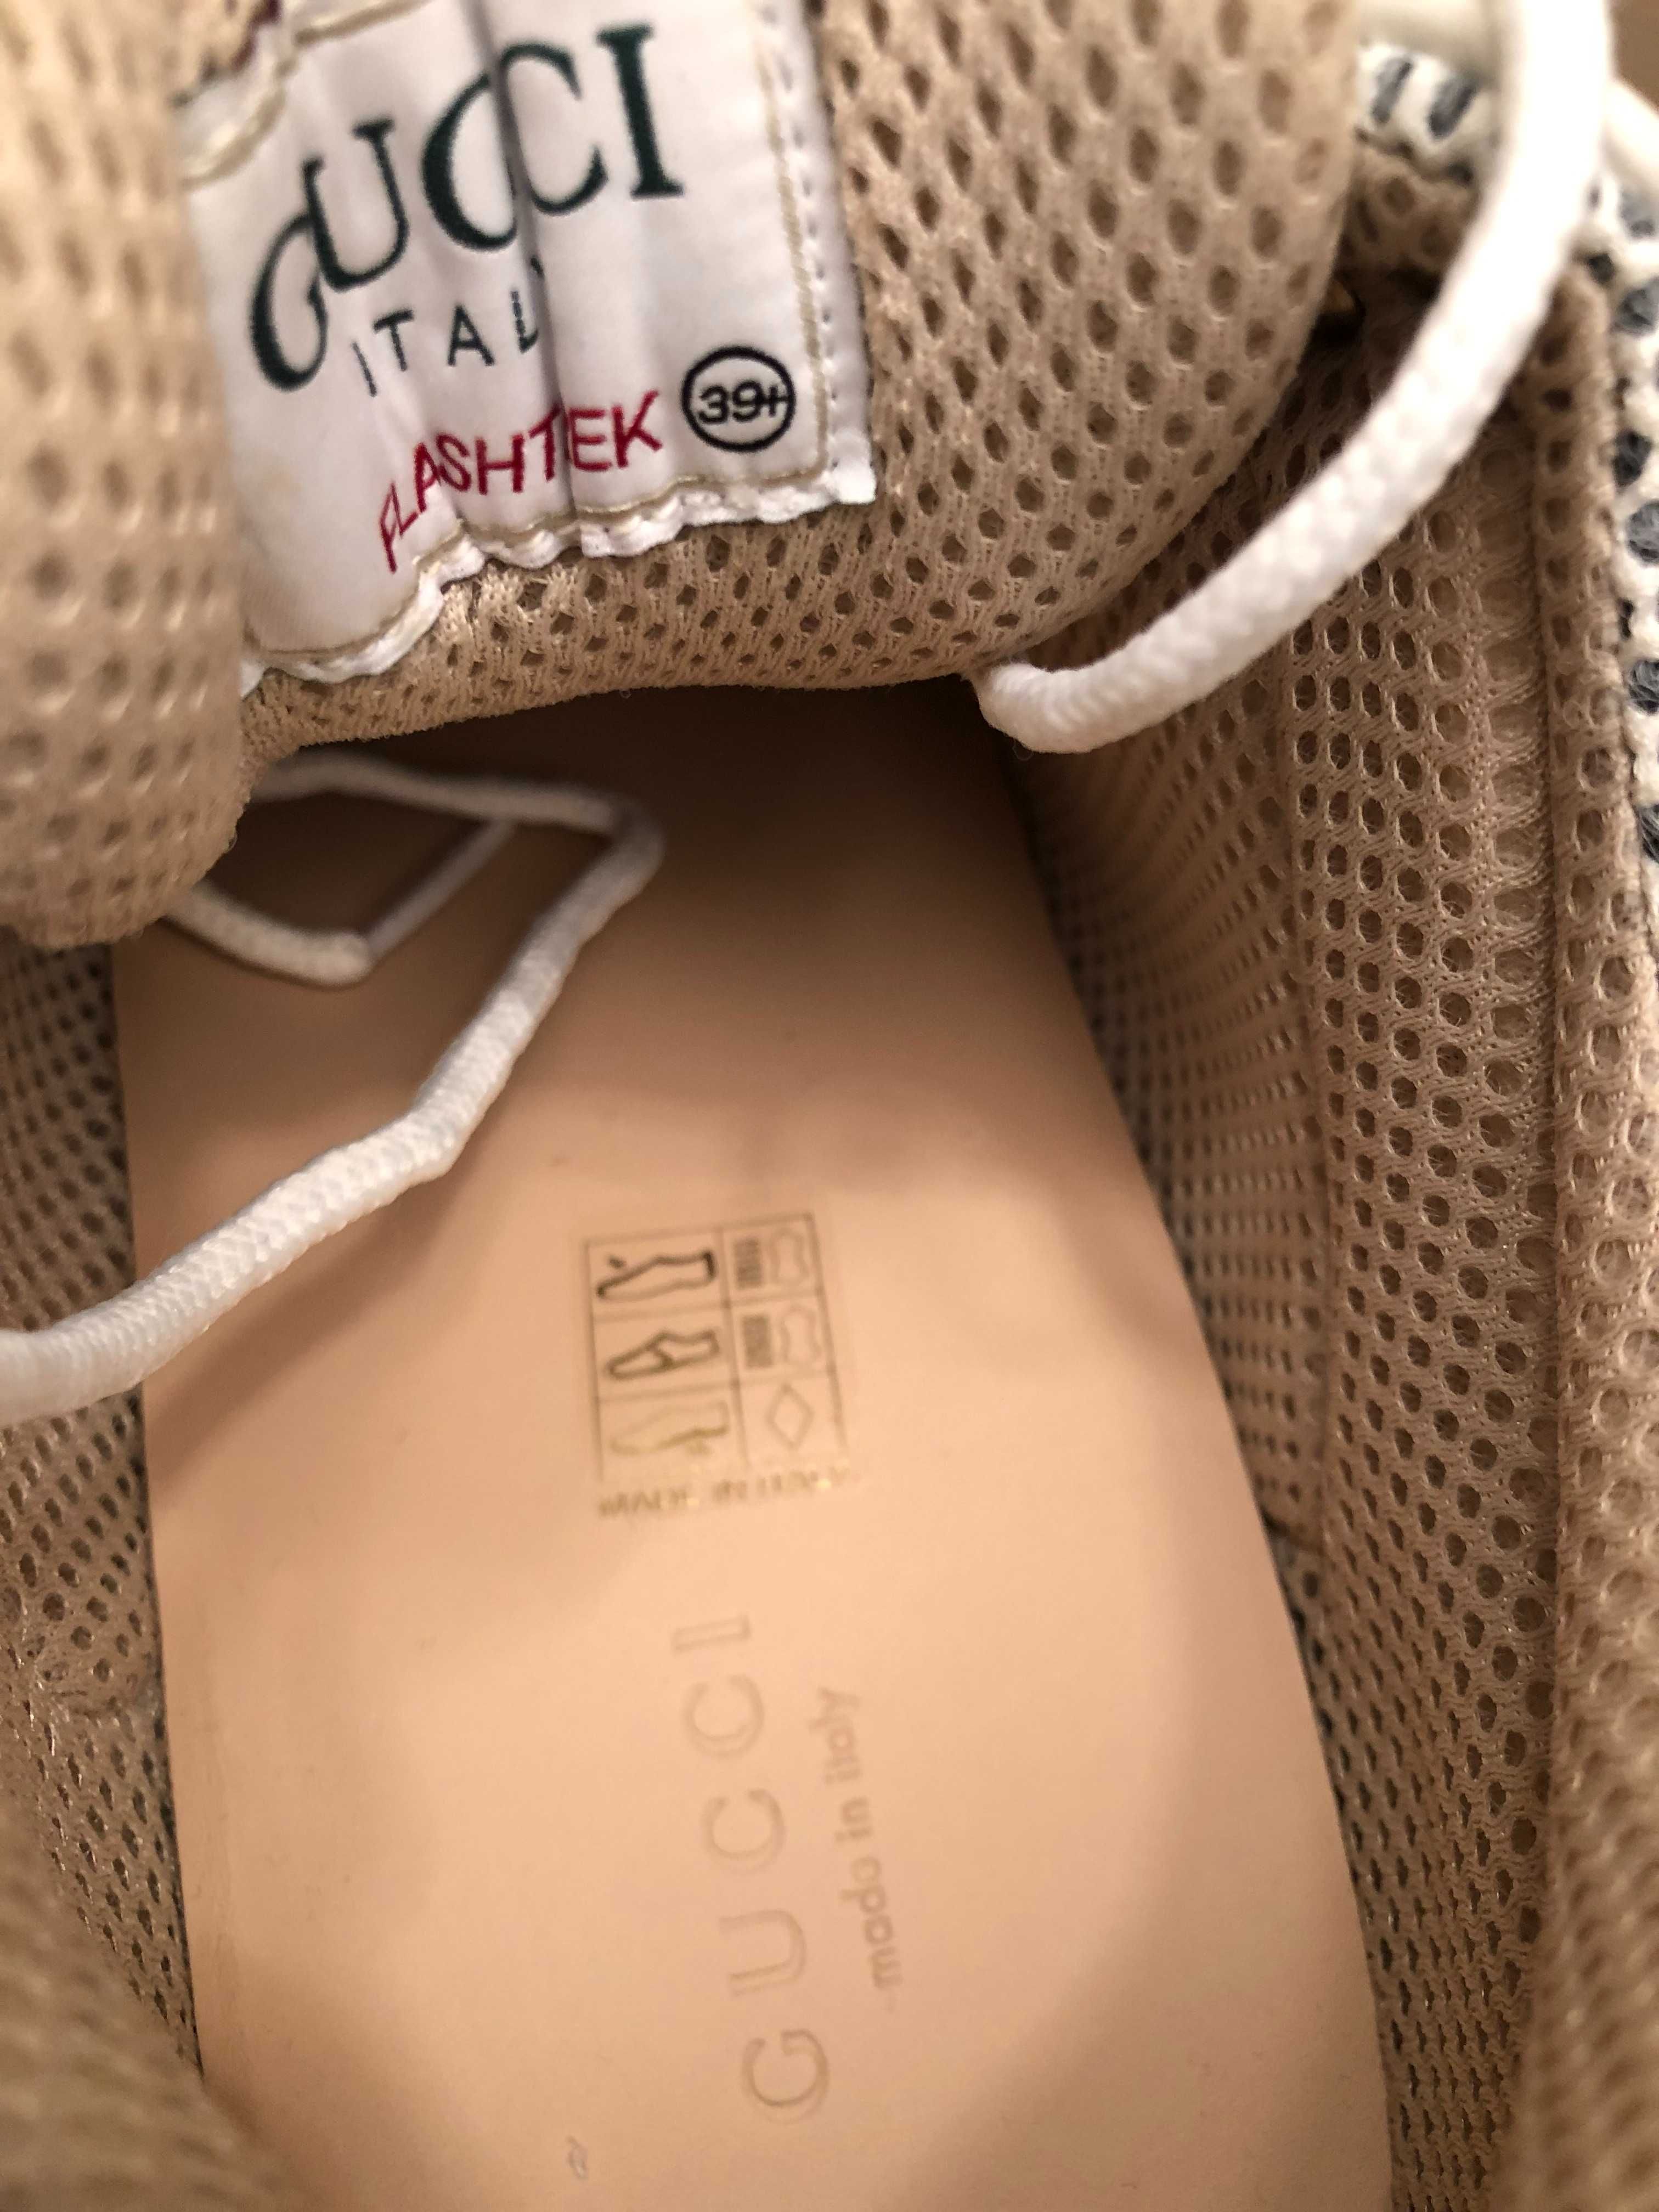 Gucci Flashtrek 39,5 sneakers originali, full box